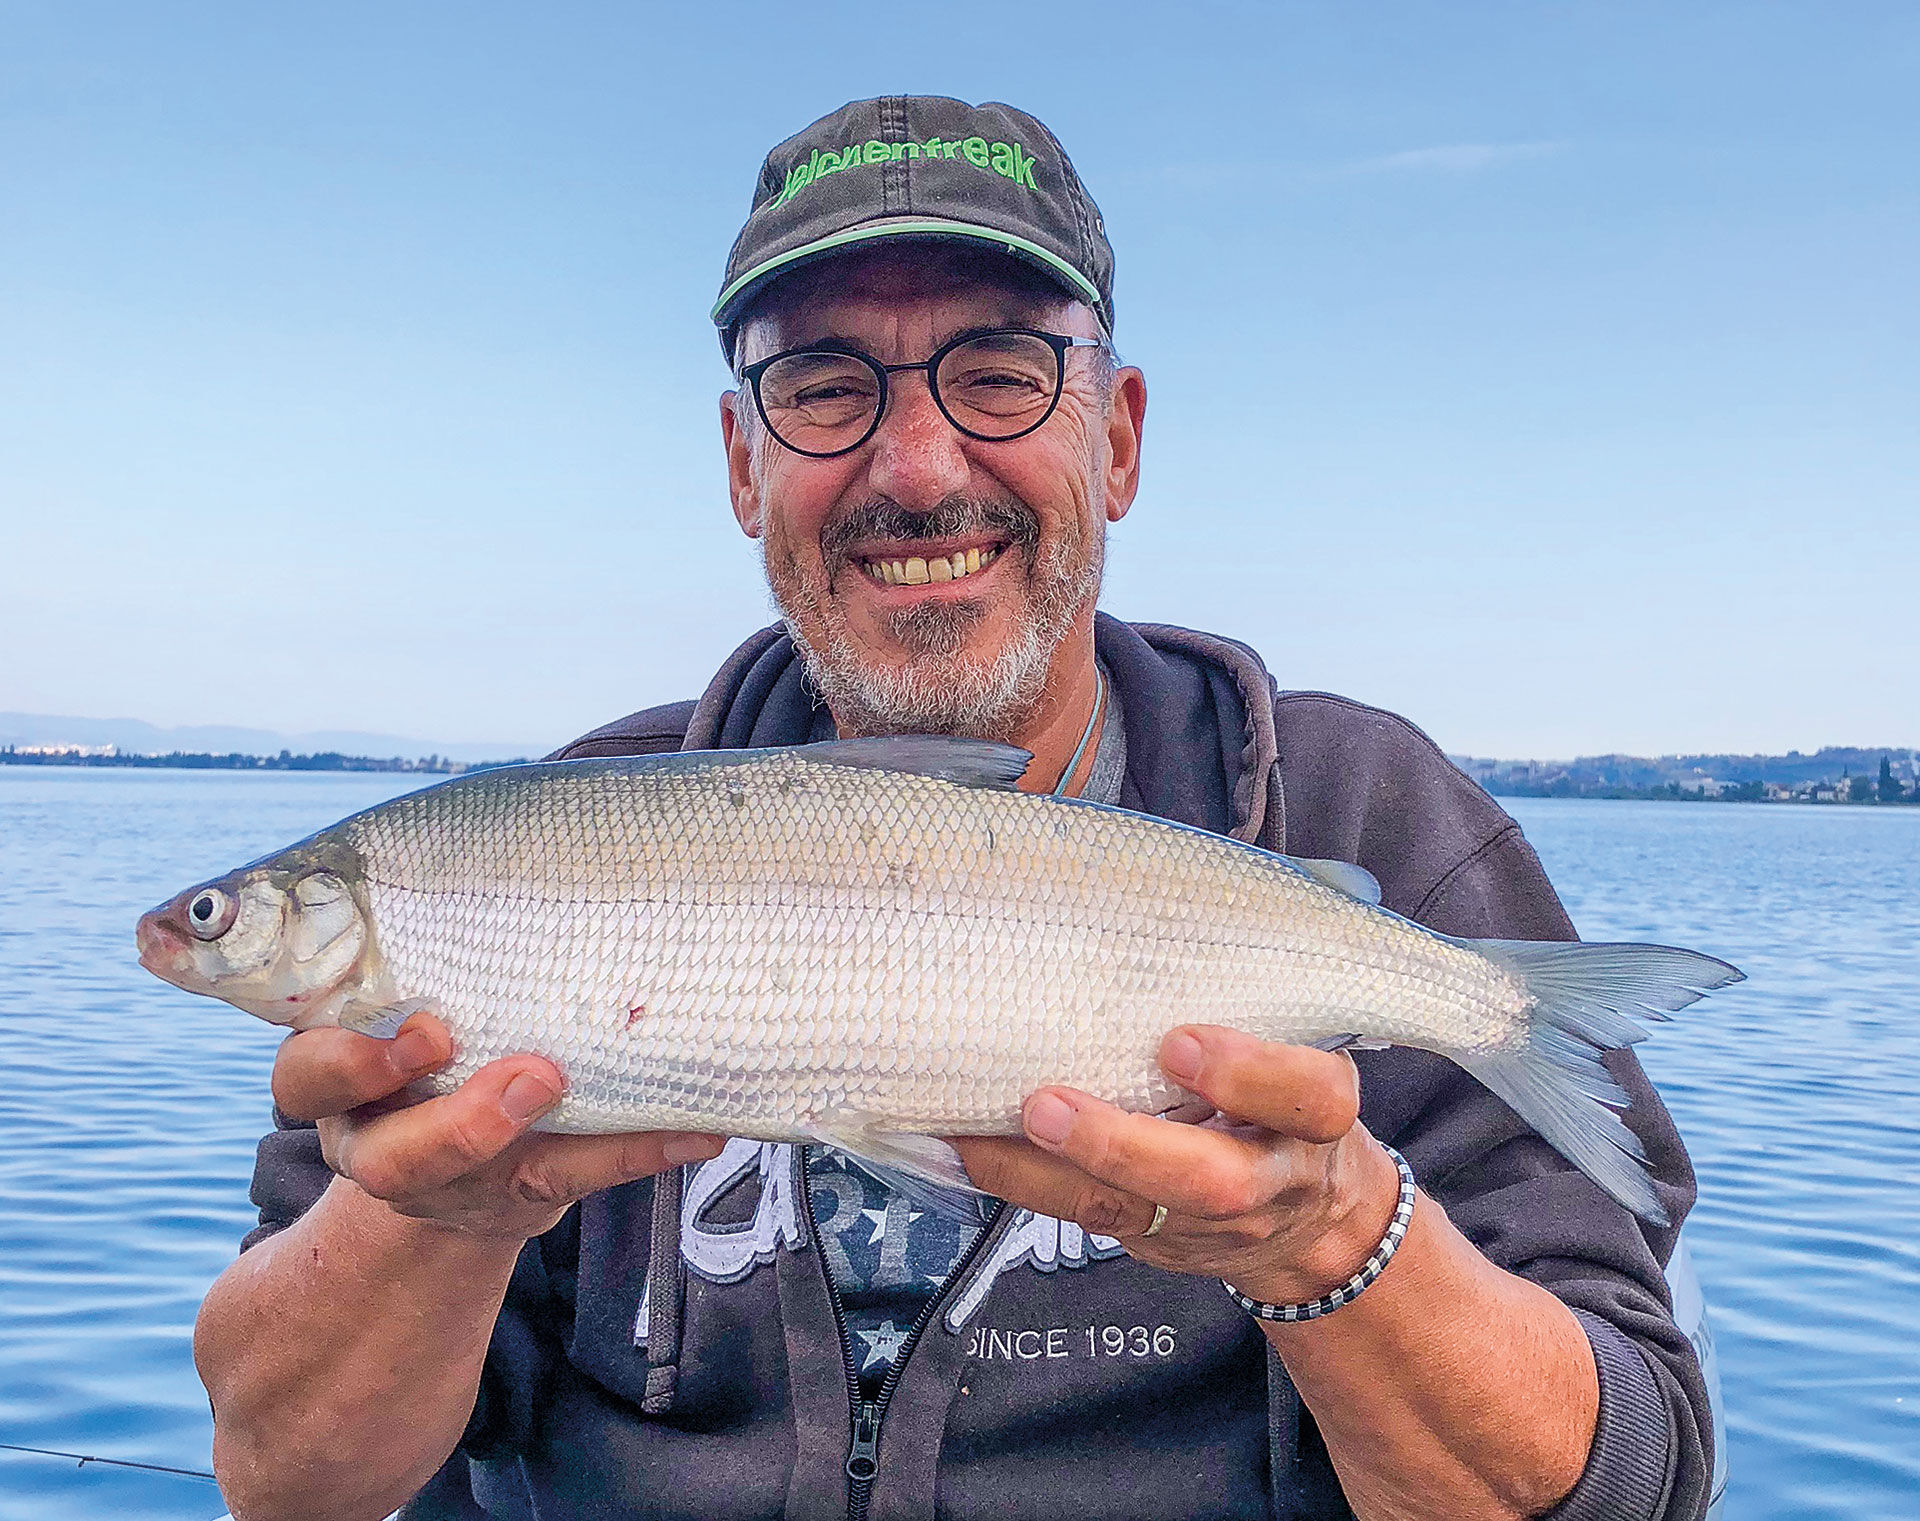  Der Autor mit einer kapitalen Zürichsee-Felche. Wer viele kleine Kniffe beim Felchenfischen beherrscht, darf häufiger mit grossen Fischen rechnen. © Markus Iten  